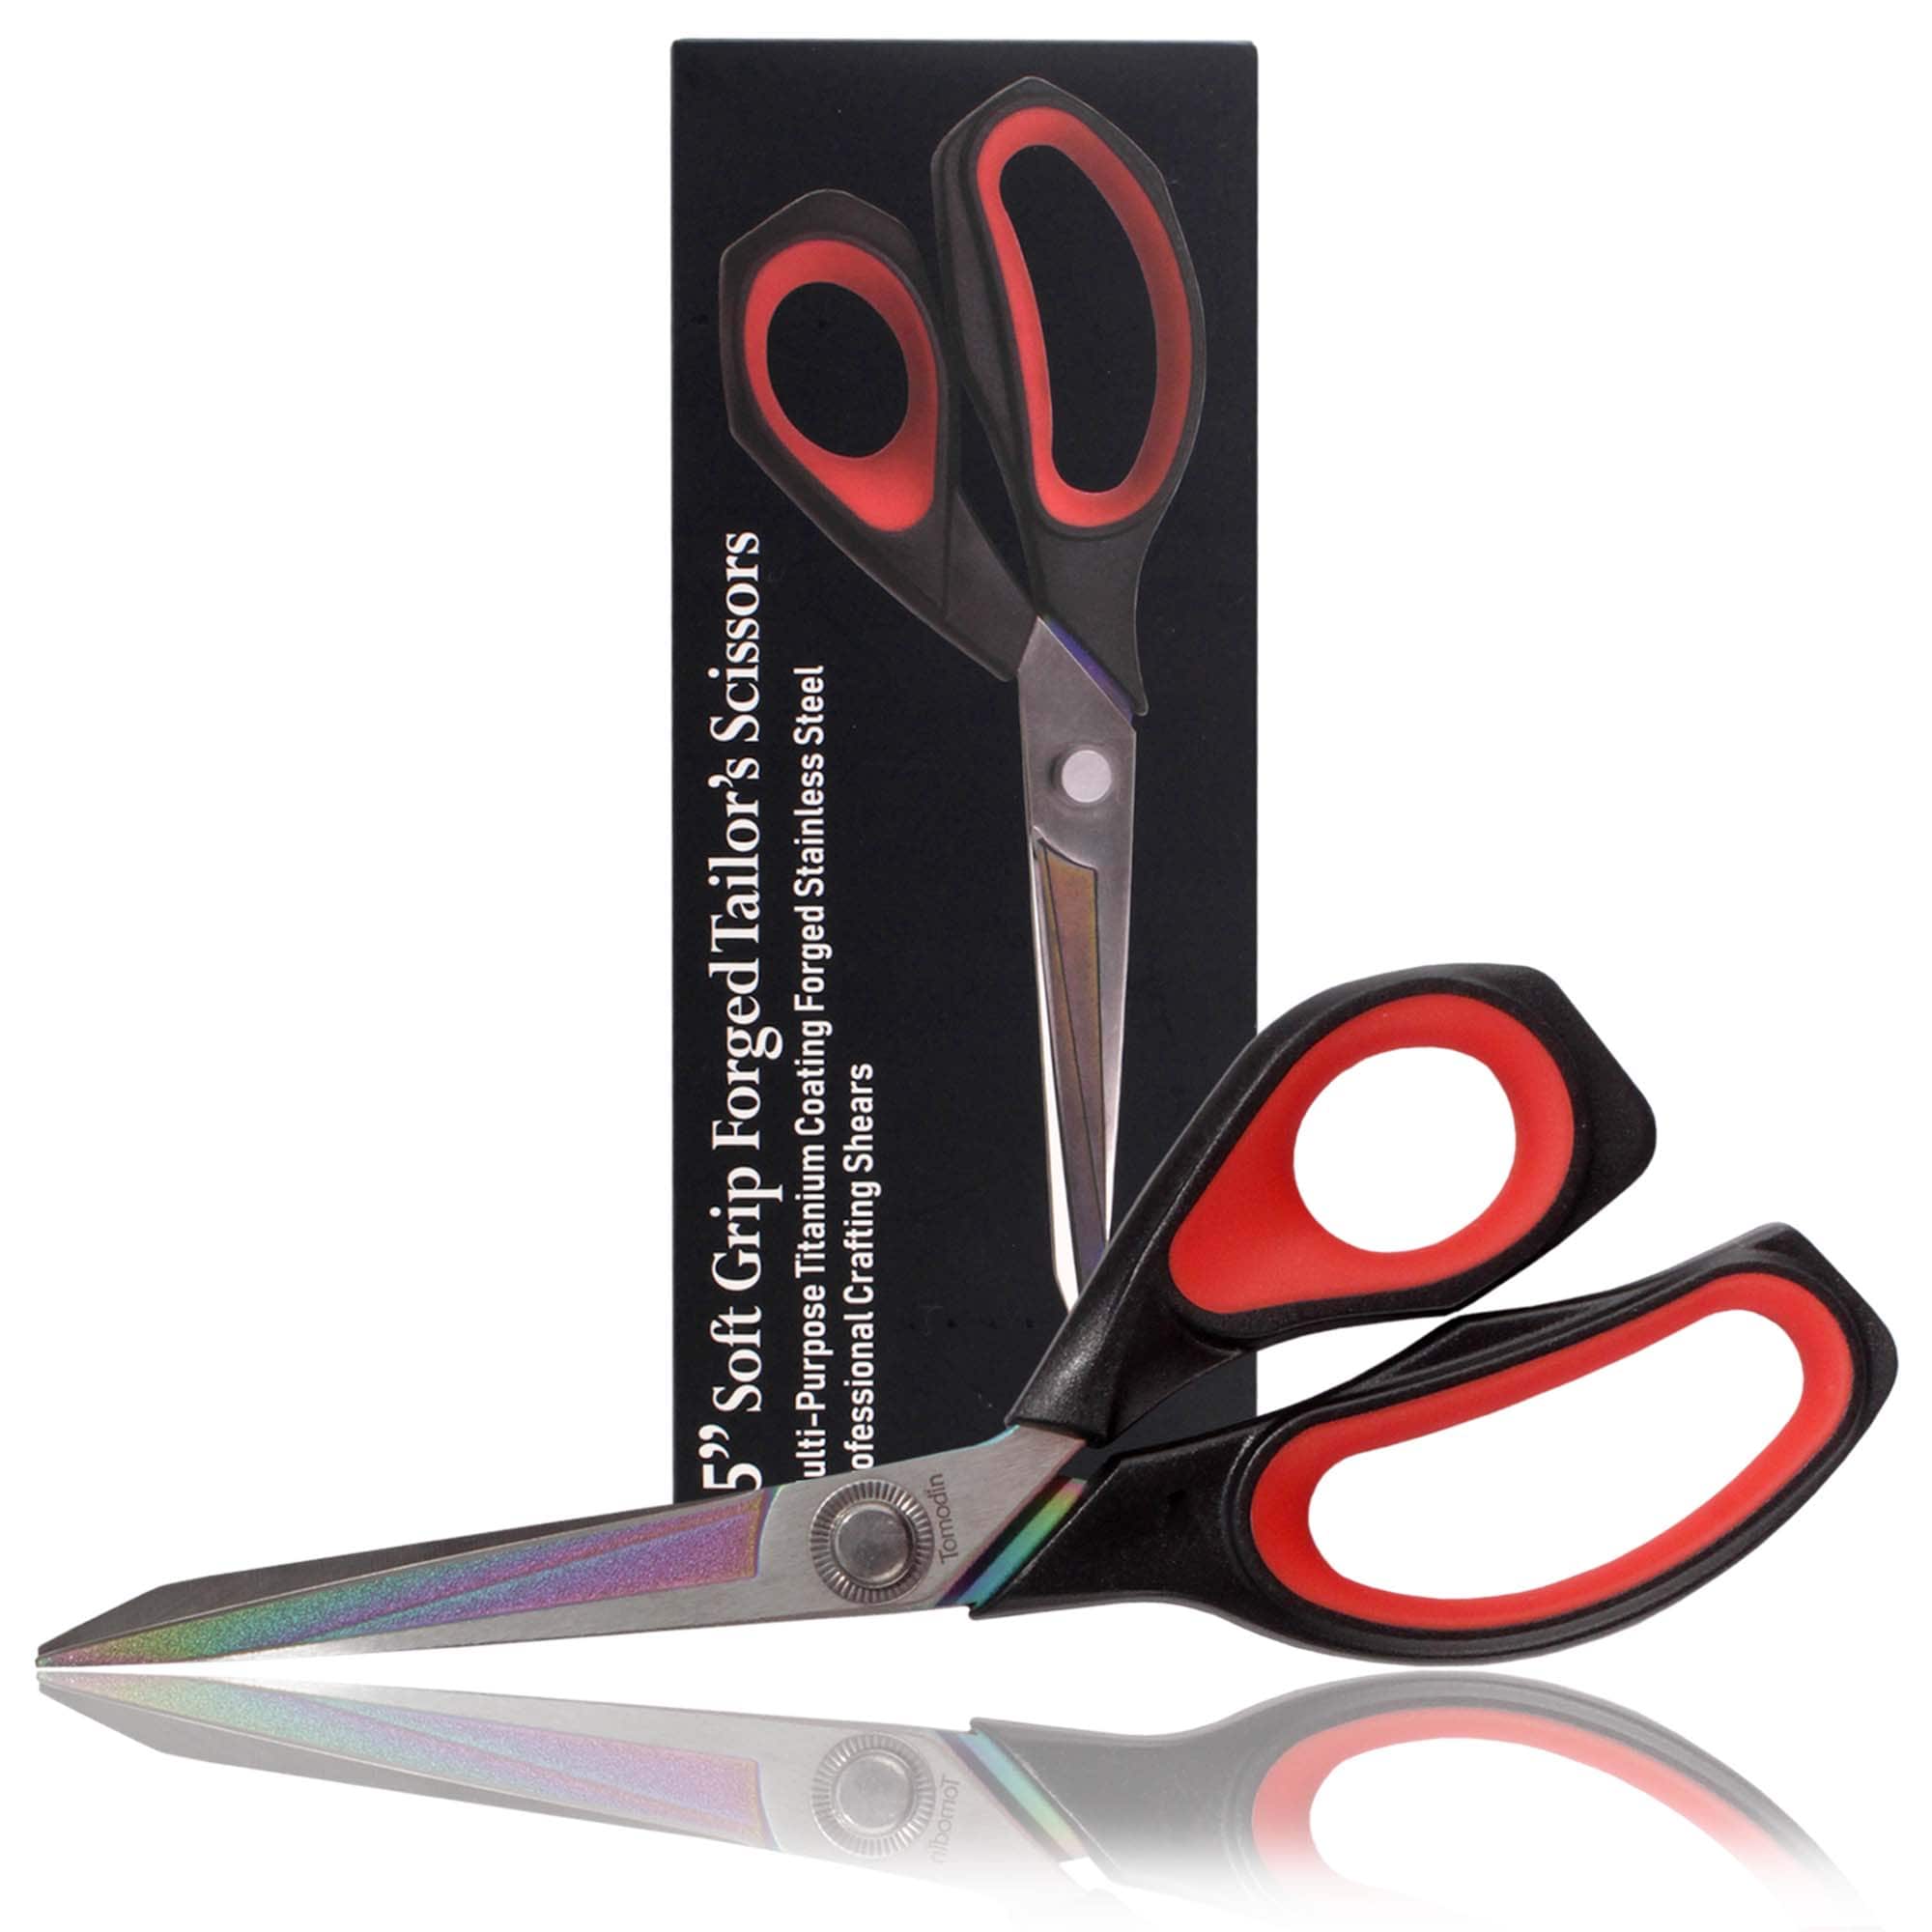 8.5 Left-Handed Titanium Scissors